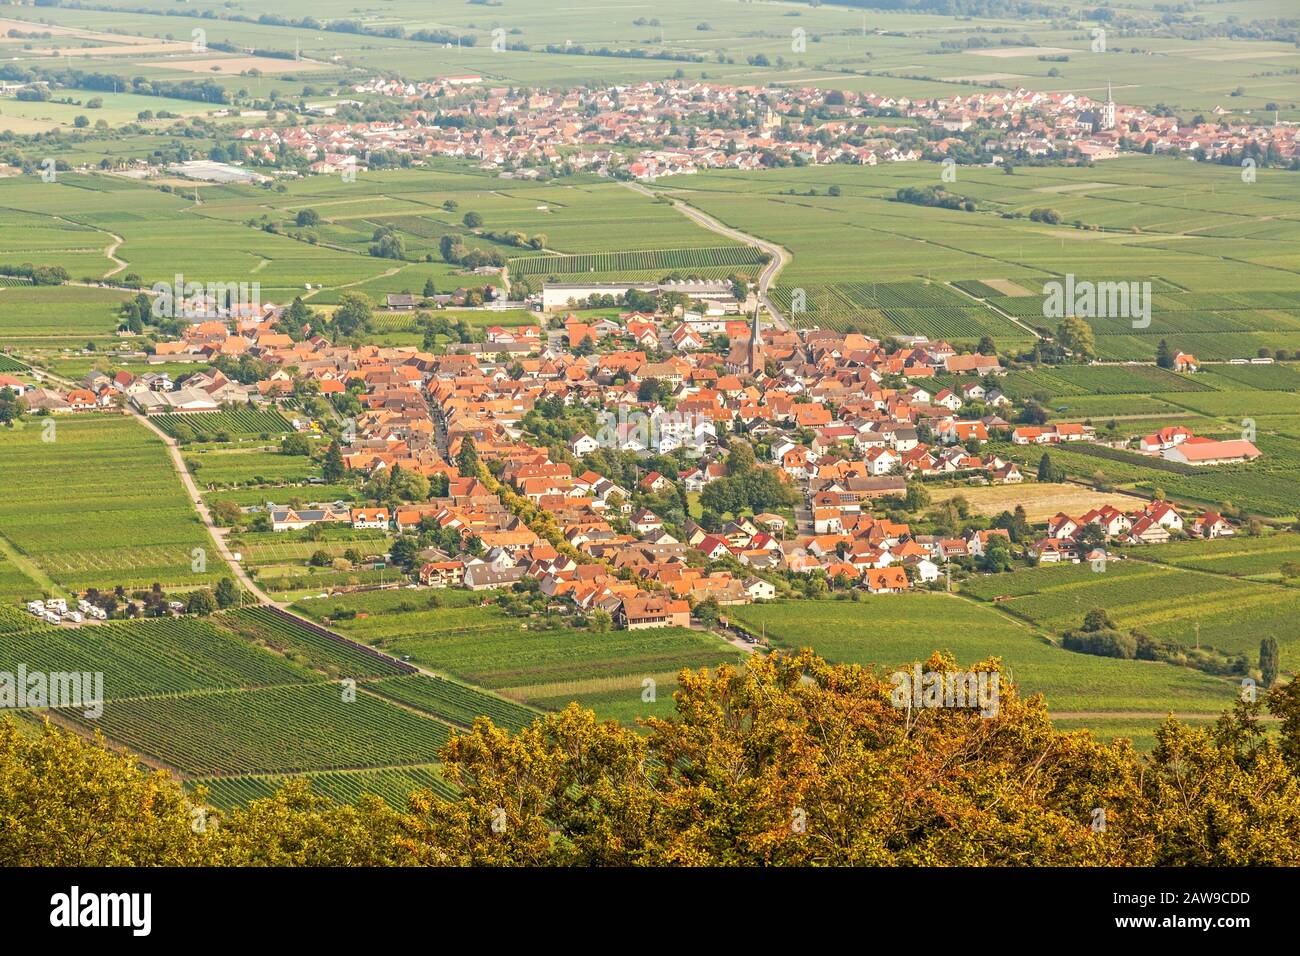 Region Suedliche Weinstrasse (southern wine route) - village named Rhodt unter Rietburg - aerial view from Rietburg ruin Stock Photo